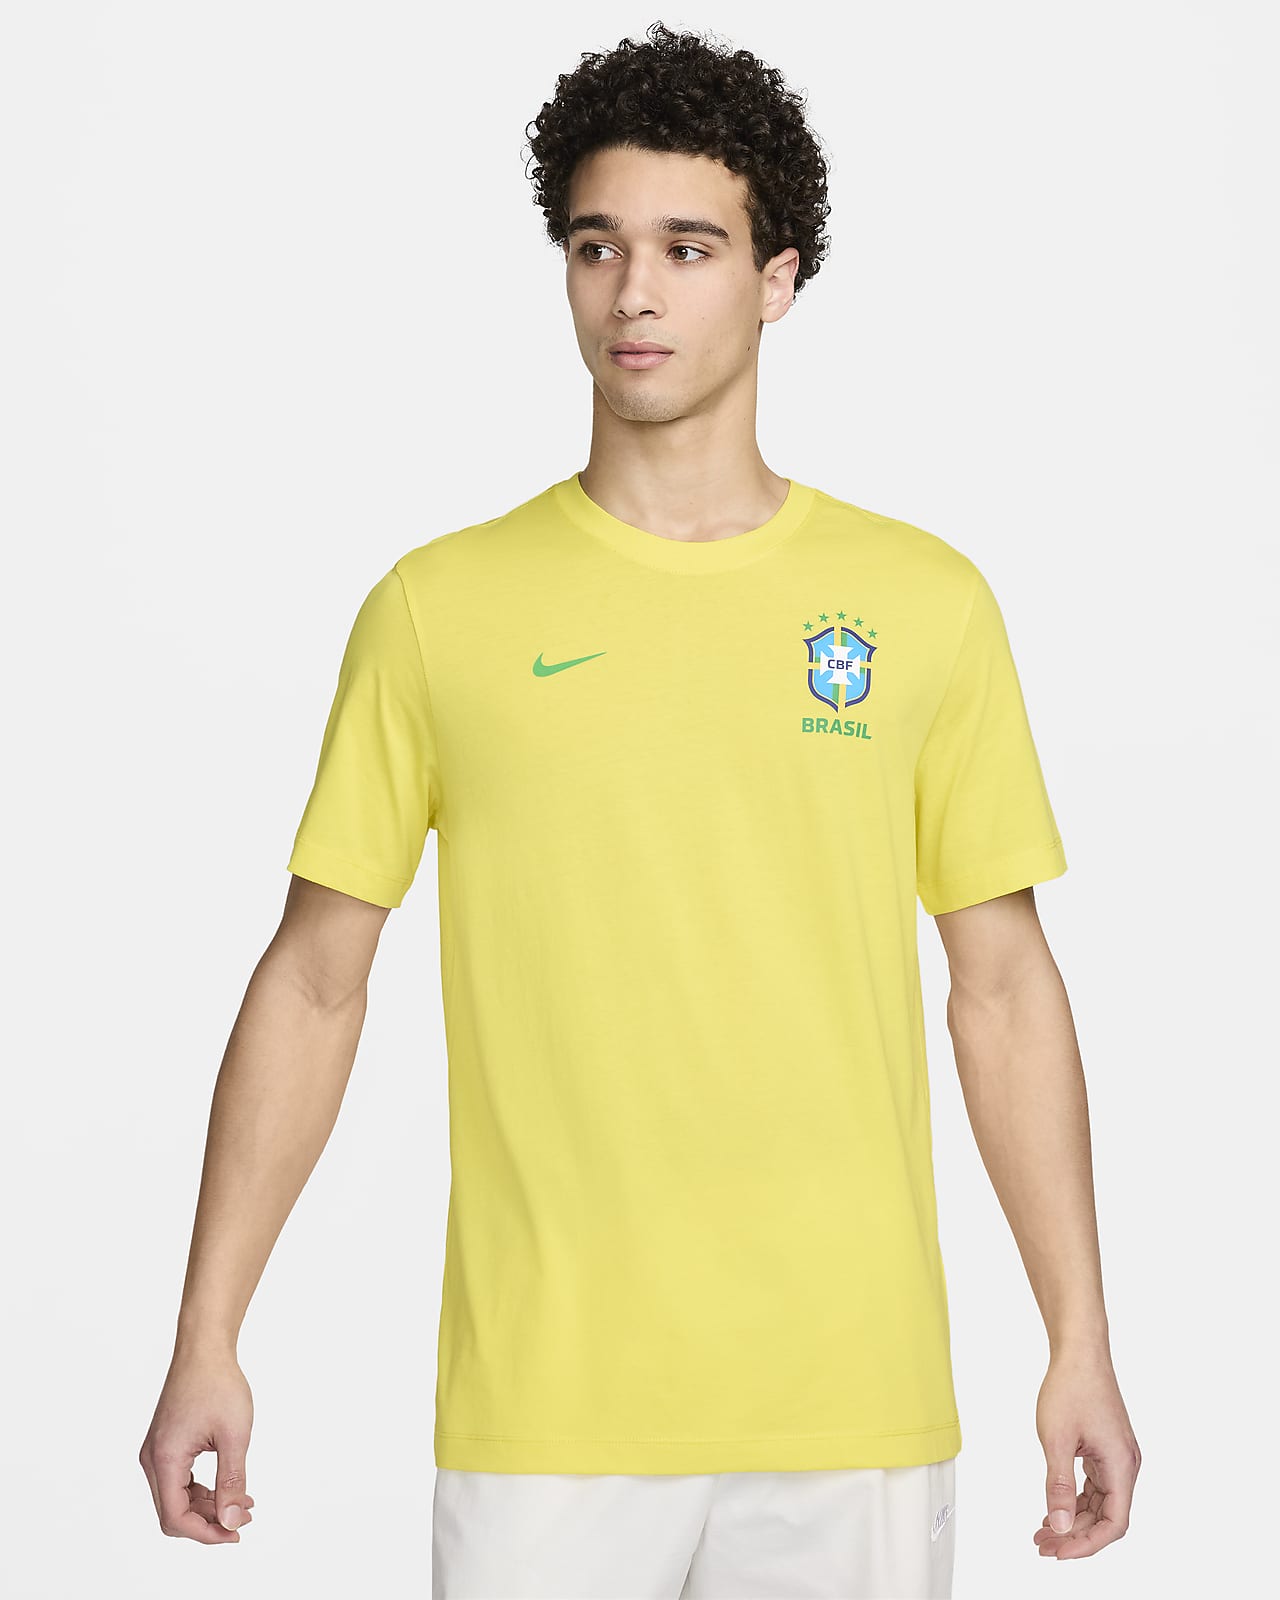 Brazil Essential Men's Nike Soccer T-Shirt